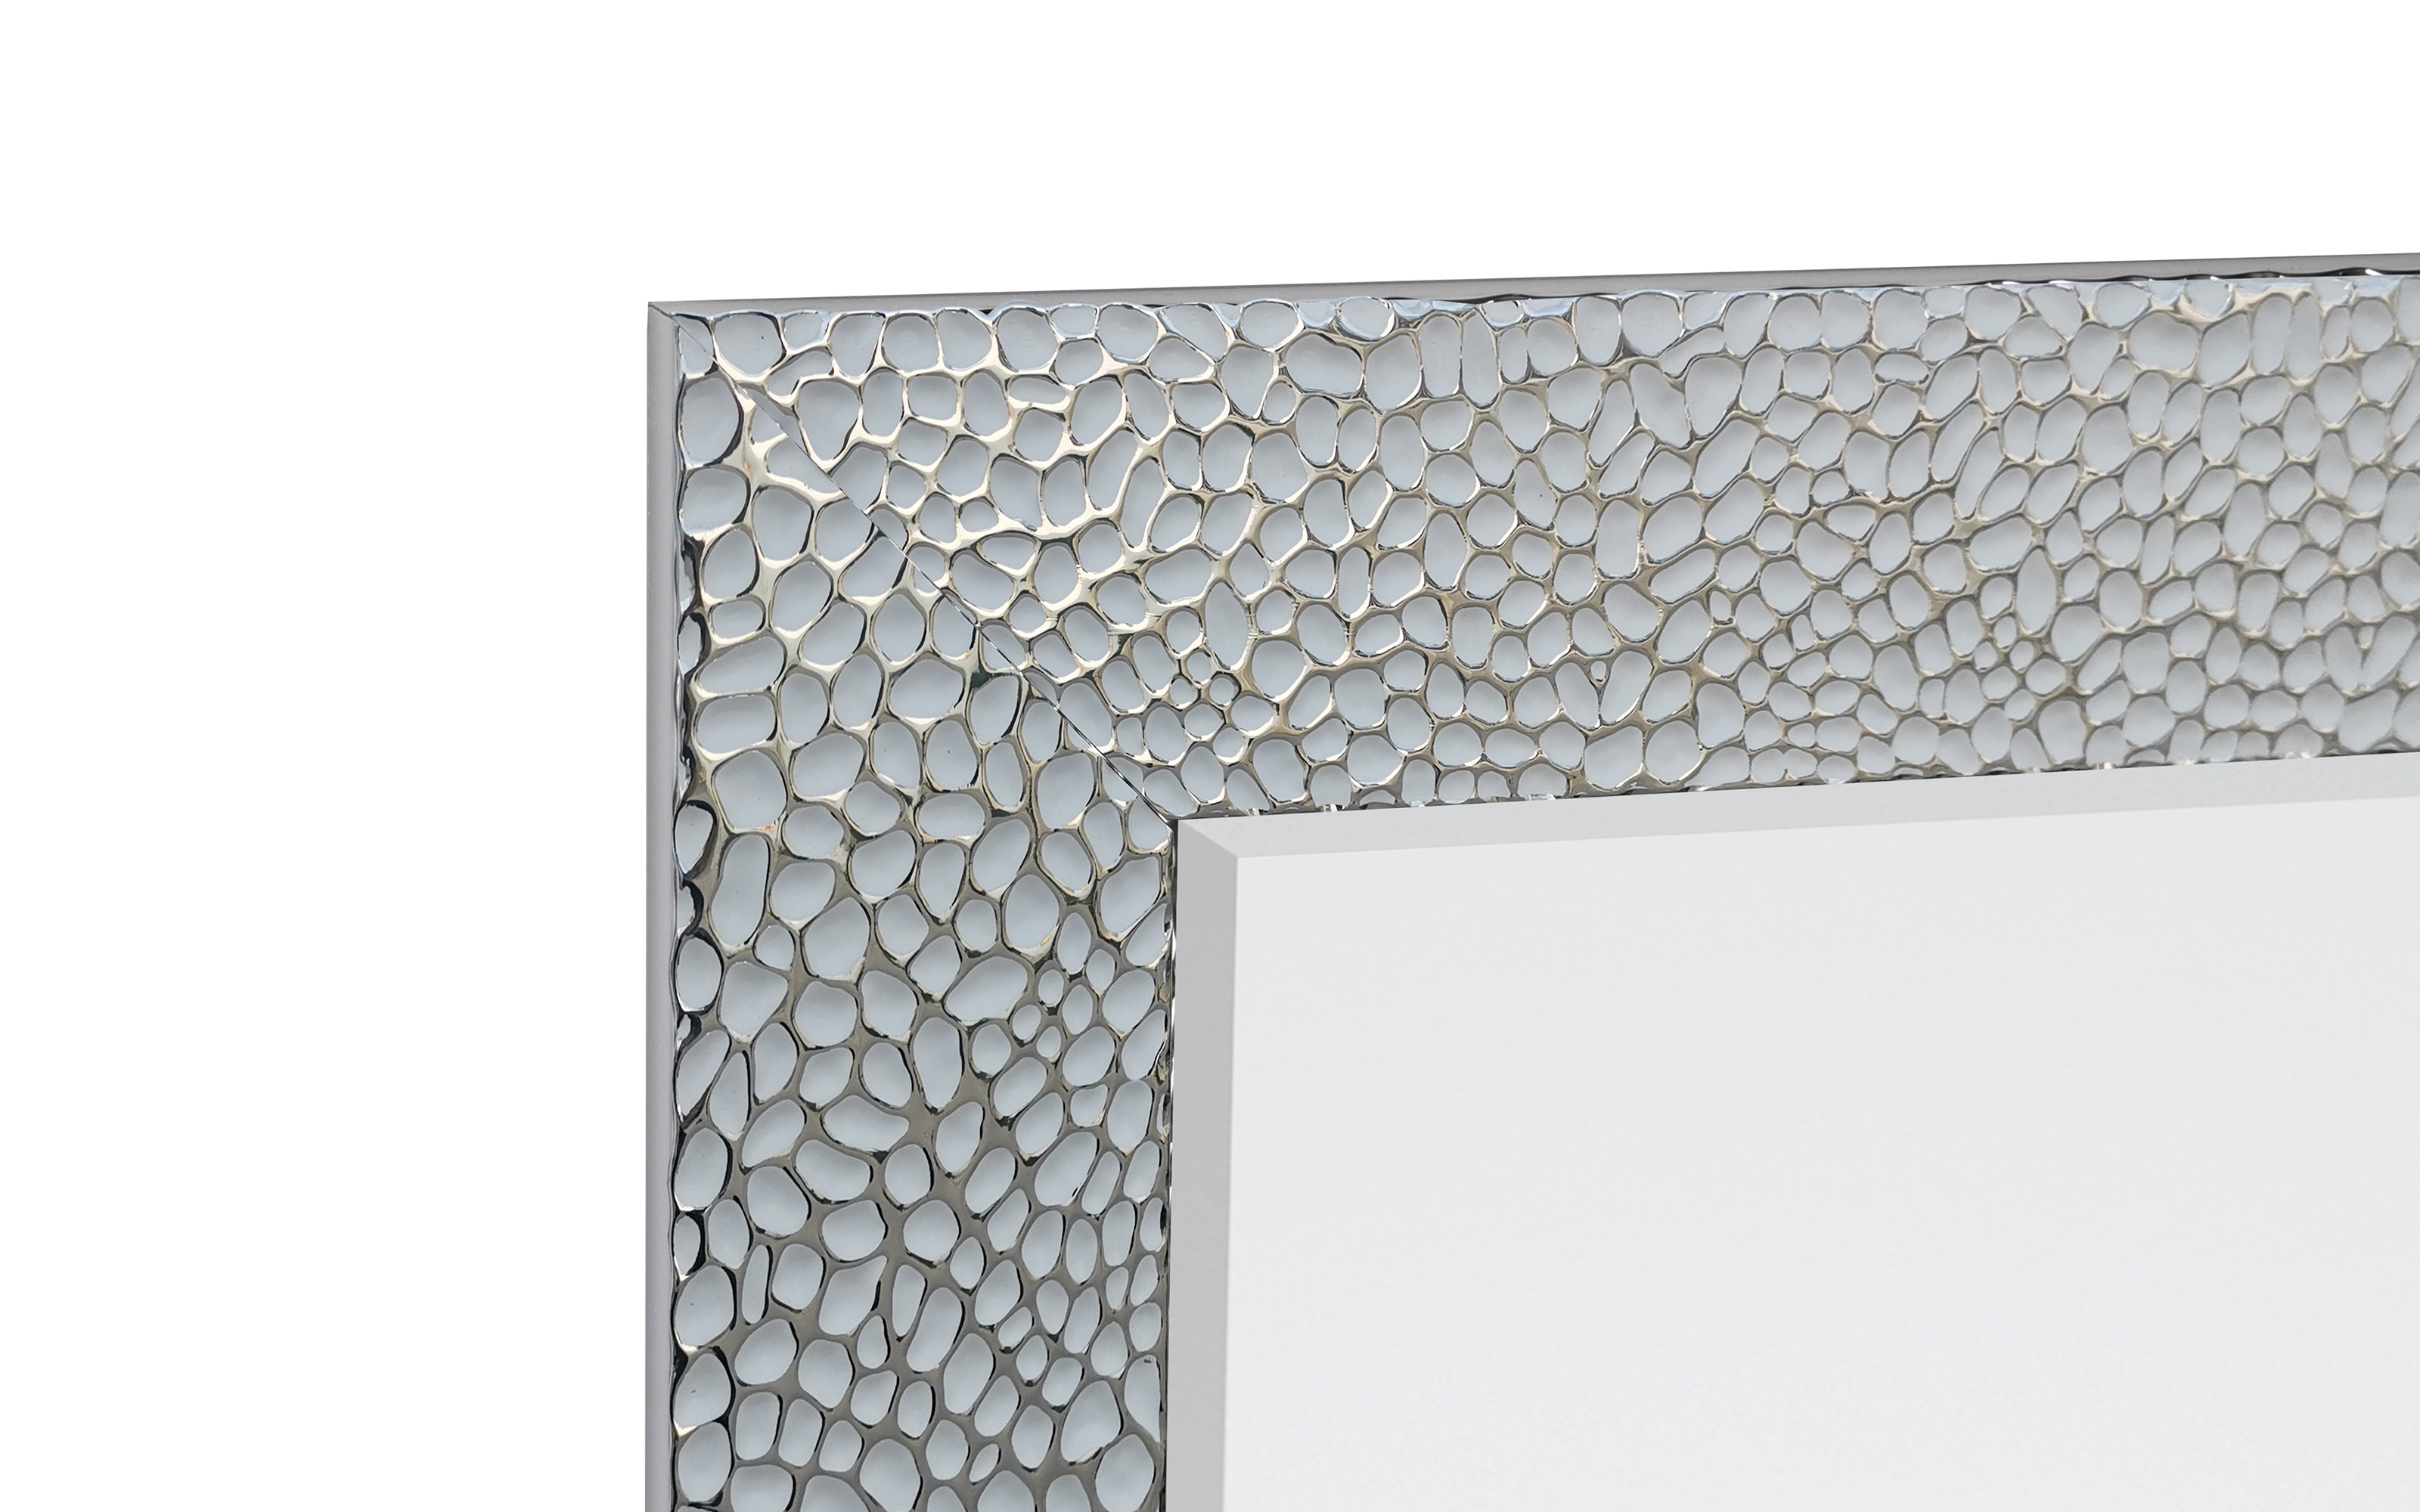 Rahmenspiegel Amy, weiß/chromfarbig, 70 x 170 cm